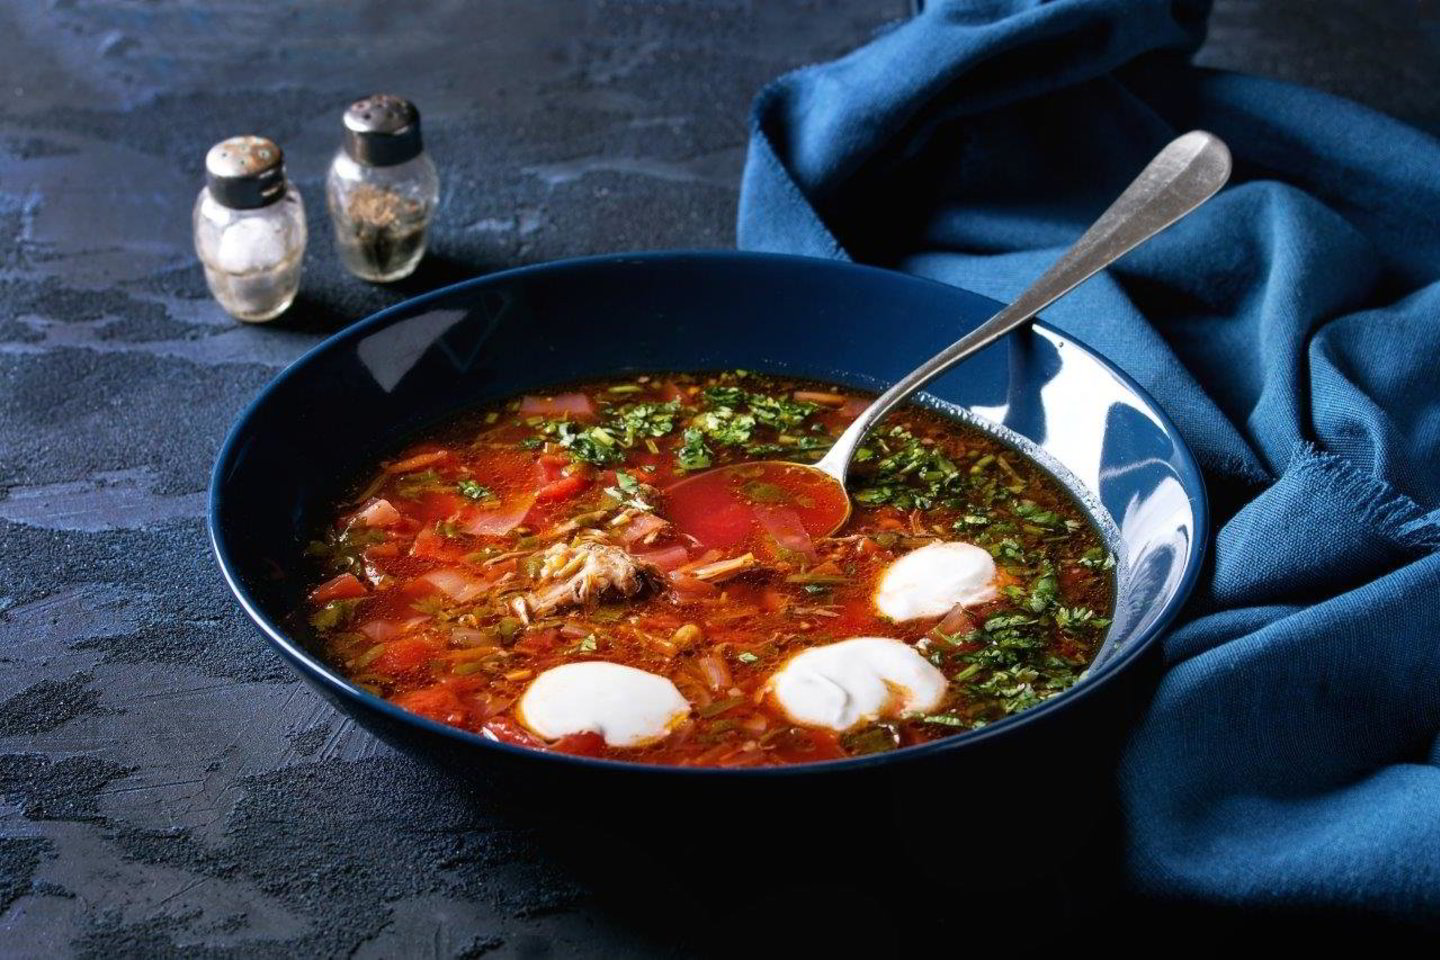  Žalias pesto padažas ar trinta pomidorų sriuba puikiai atrodys juodos spalvos induose, o aštuonkojis ar netgi šaltibarščiai – mėlynose.